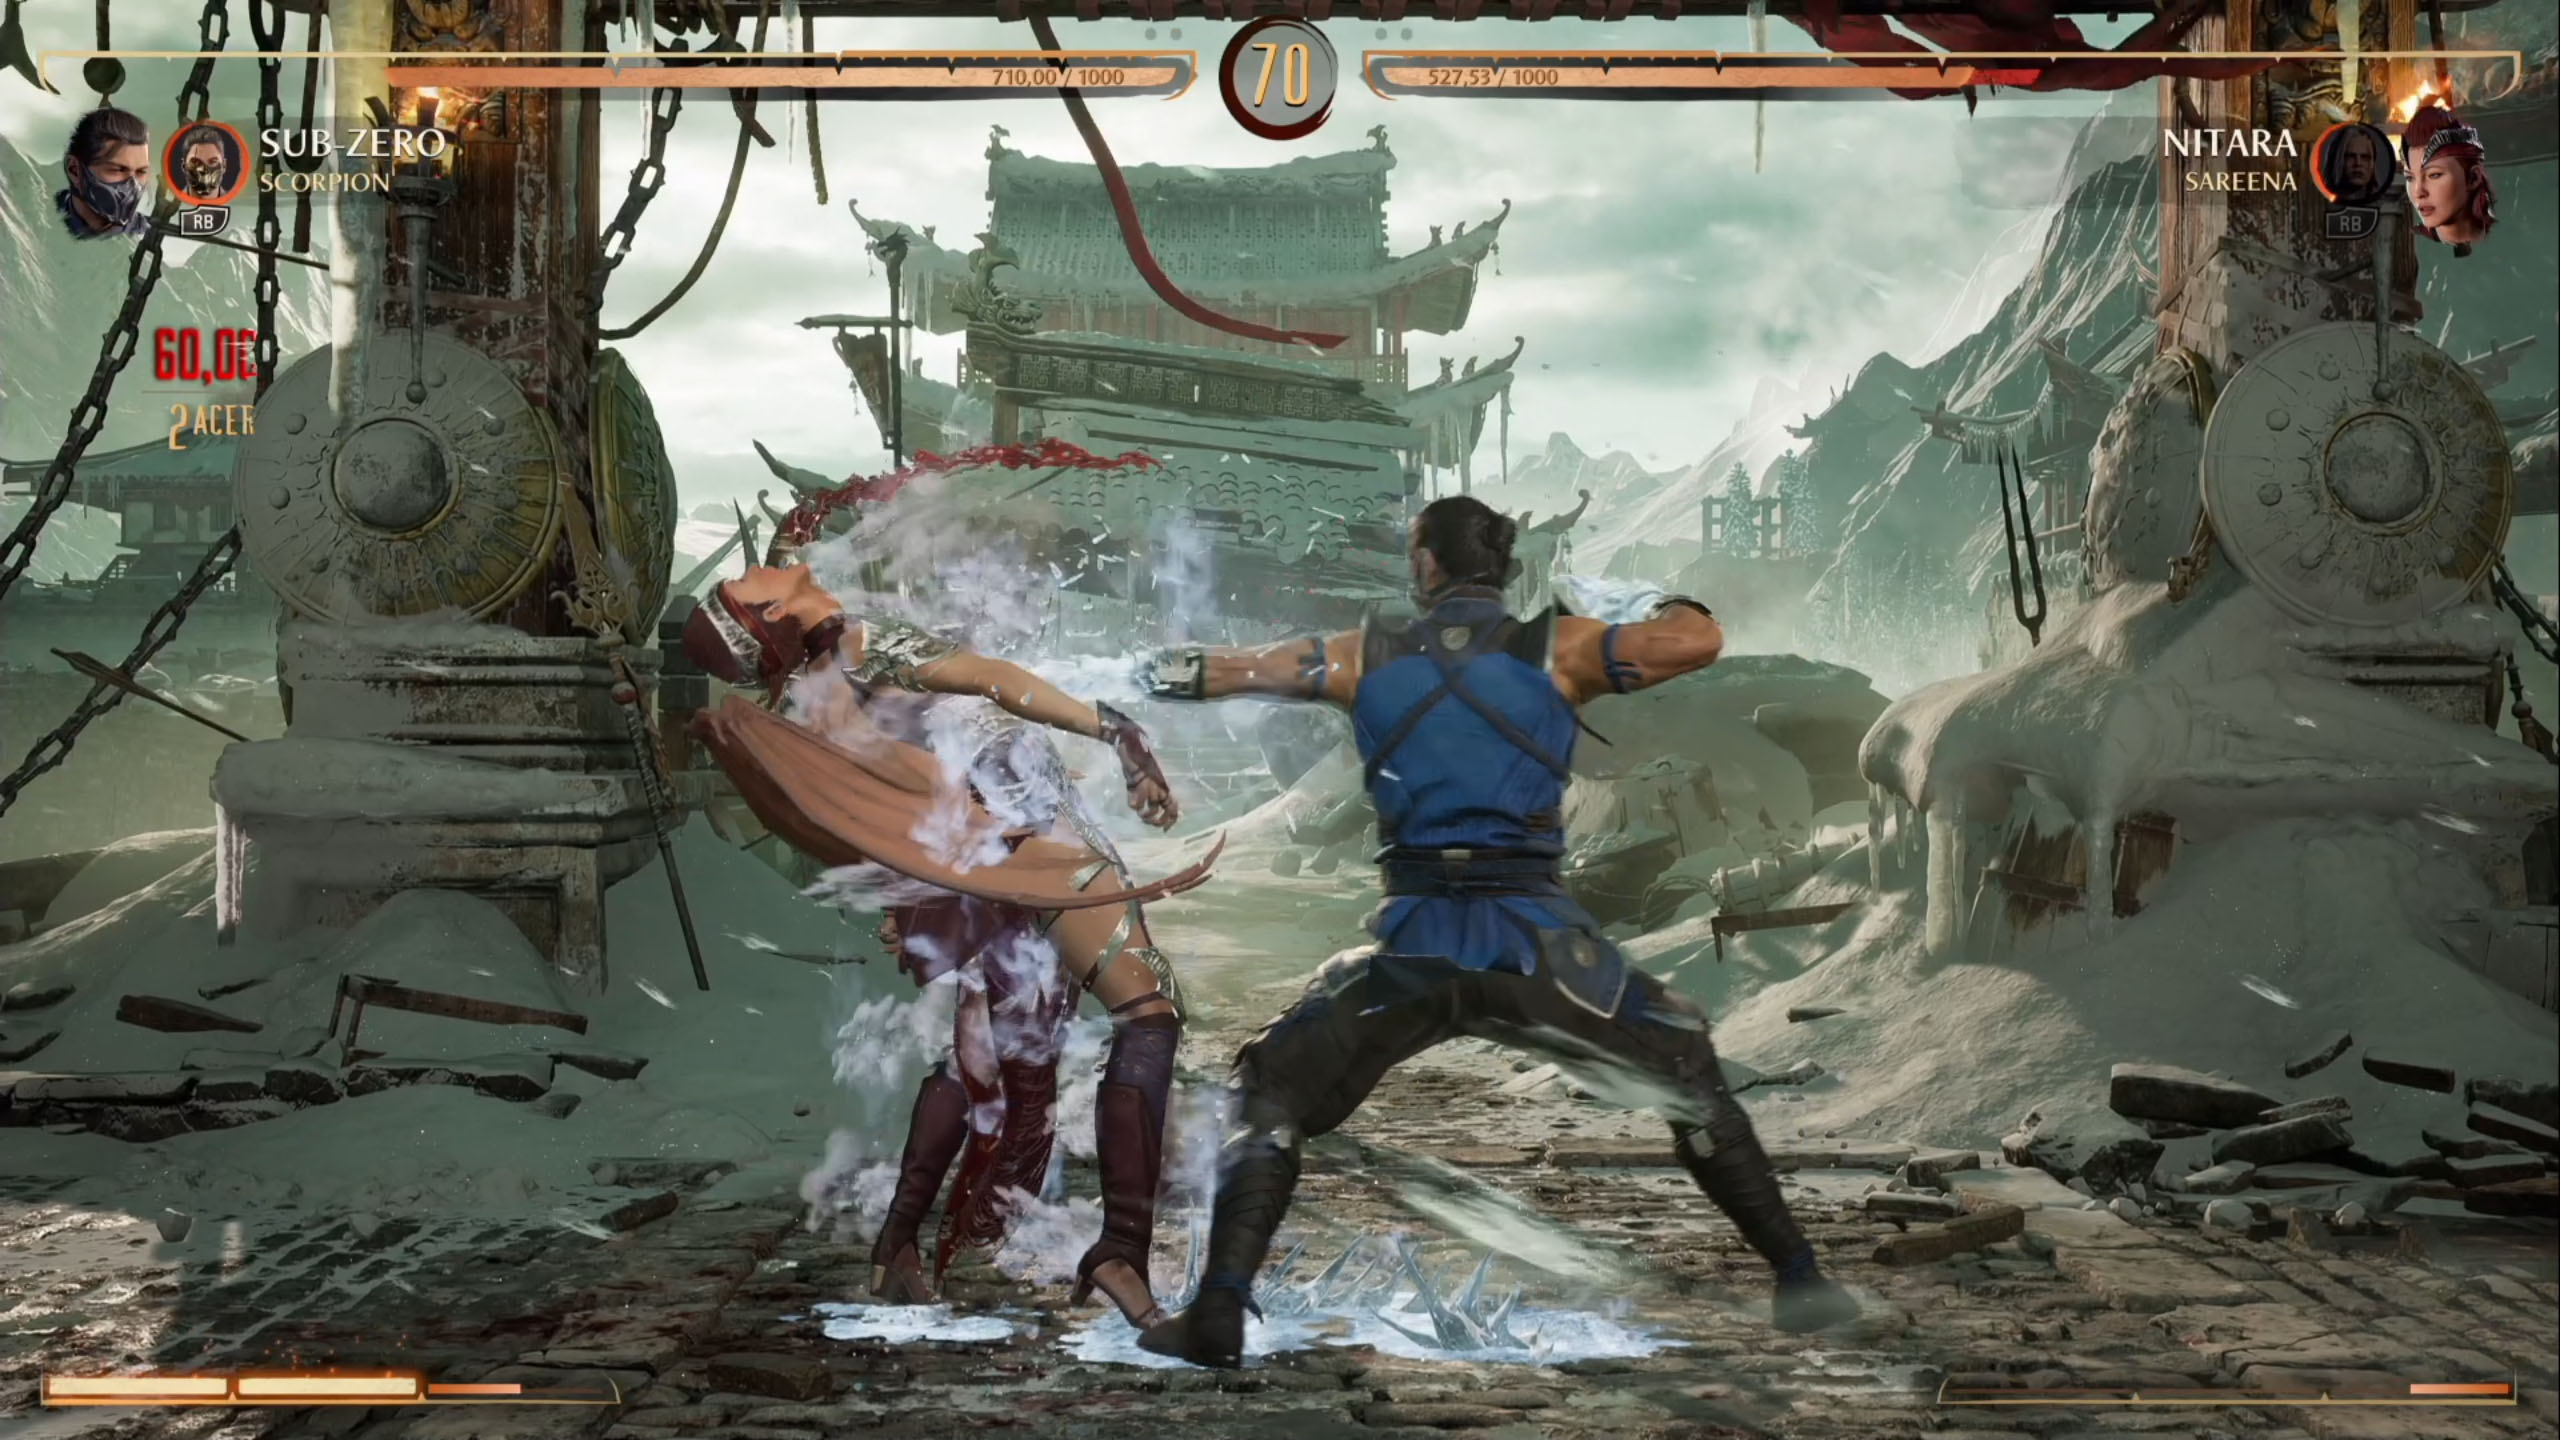 Análise] Mortal Kombat 1: um recomeço sangrento e divertido para a